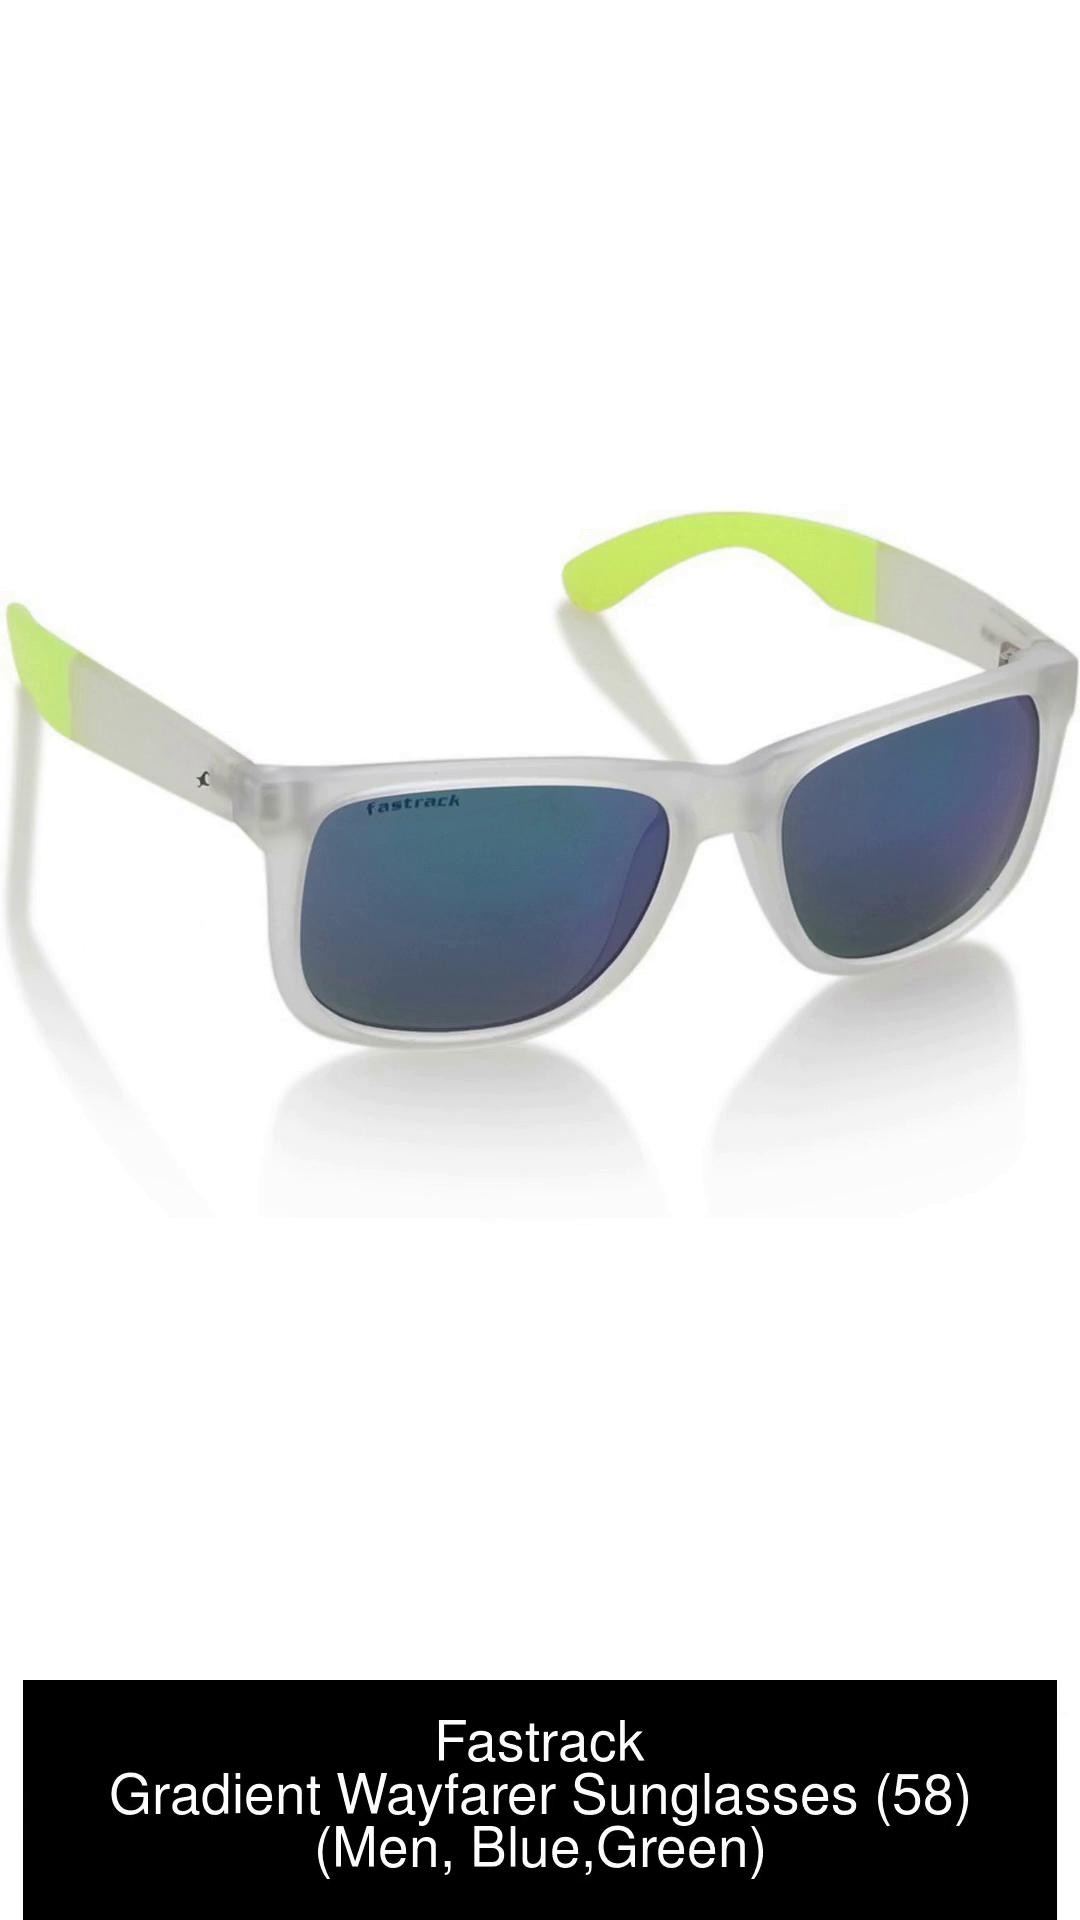 Buy Fastrack Wayfarer Sunglasses Blue, Green For Men Online @ Best